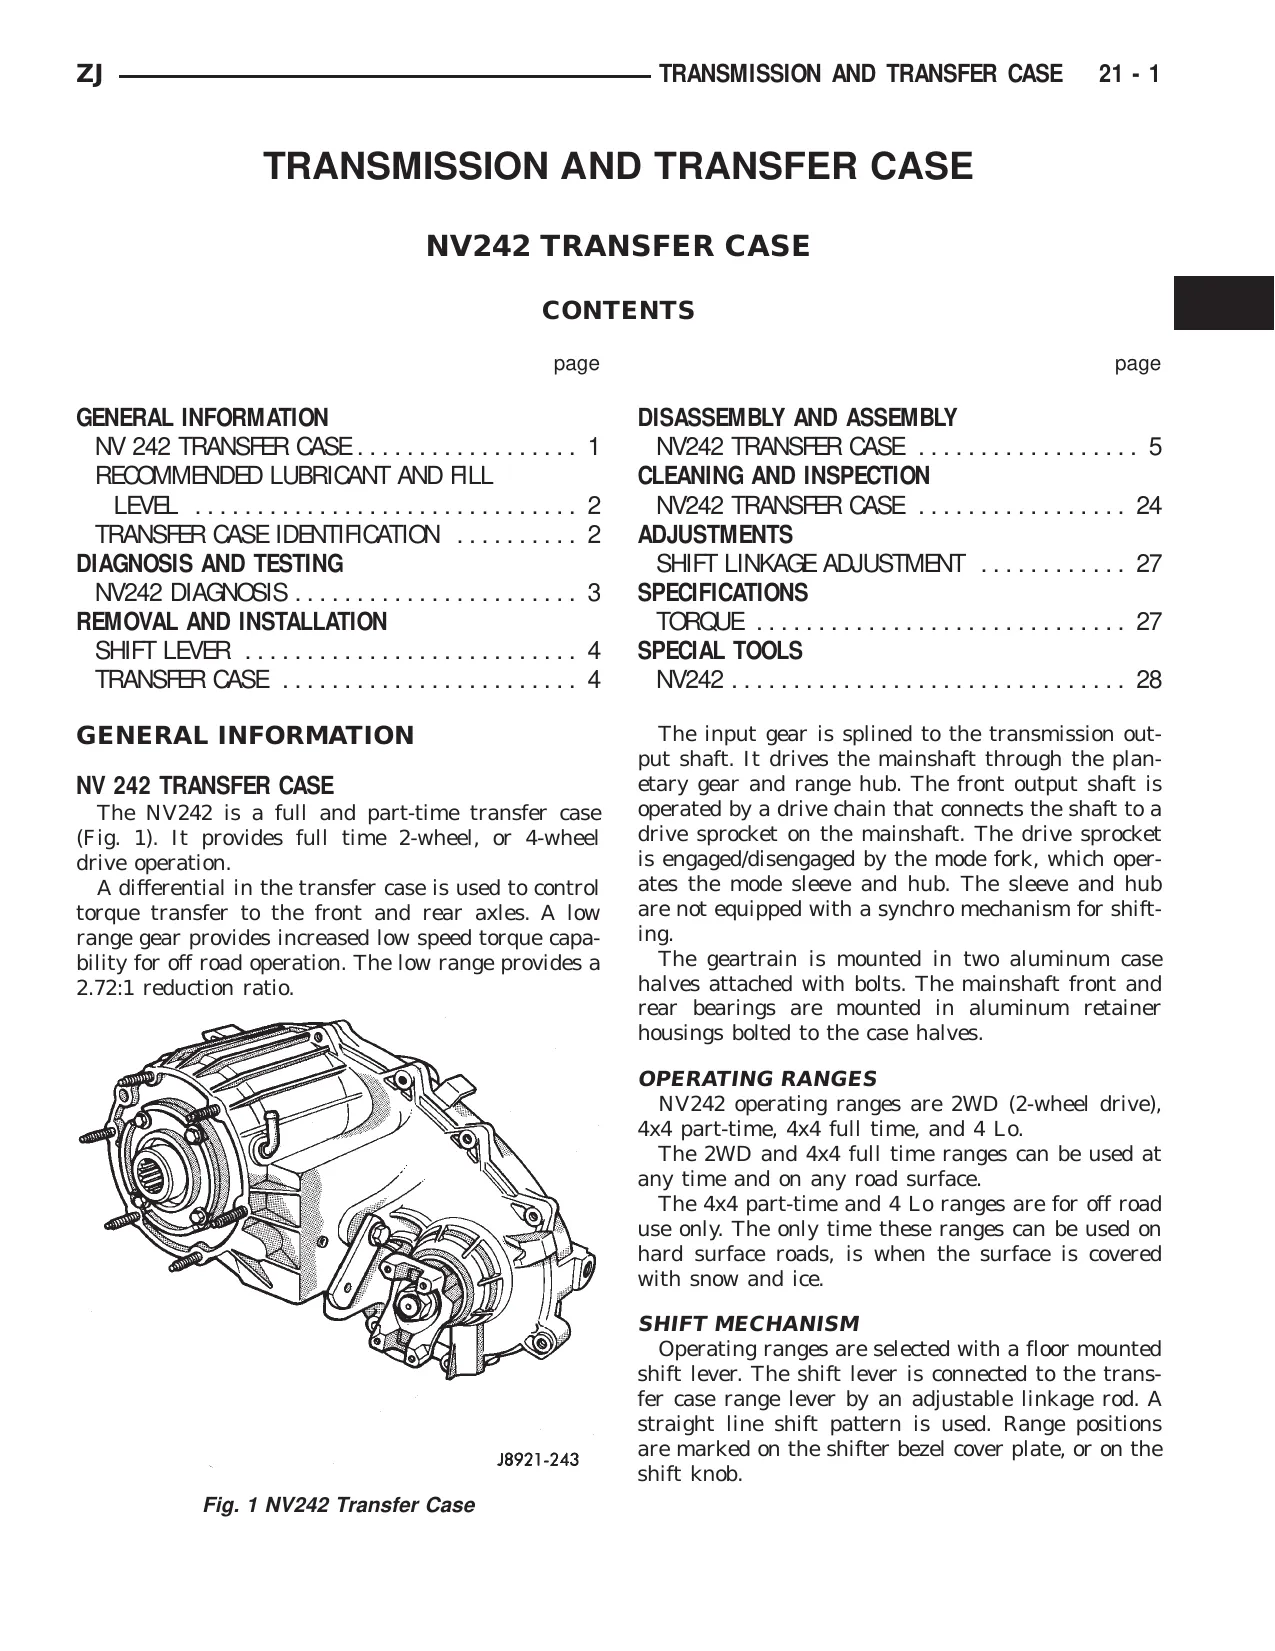 1996 Jeep Grand Cherokee ZJ repair manual